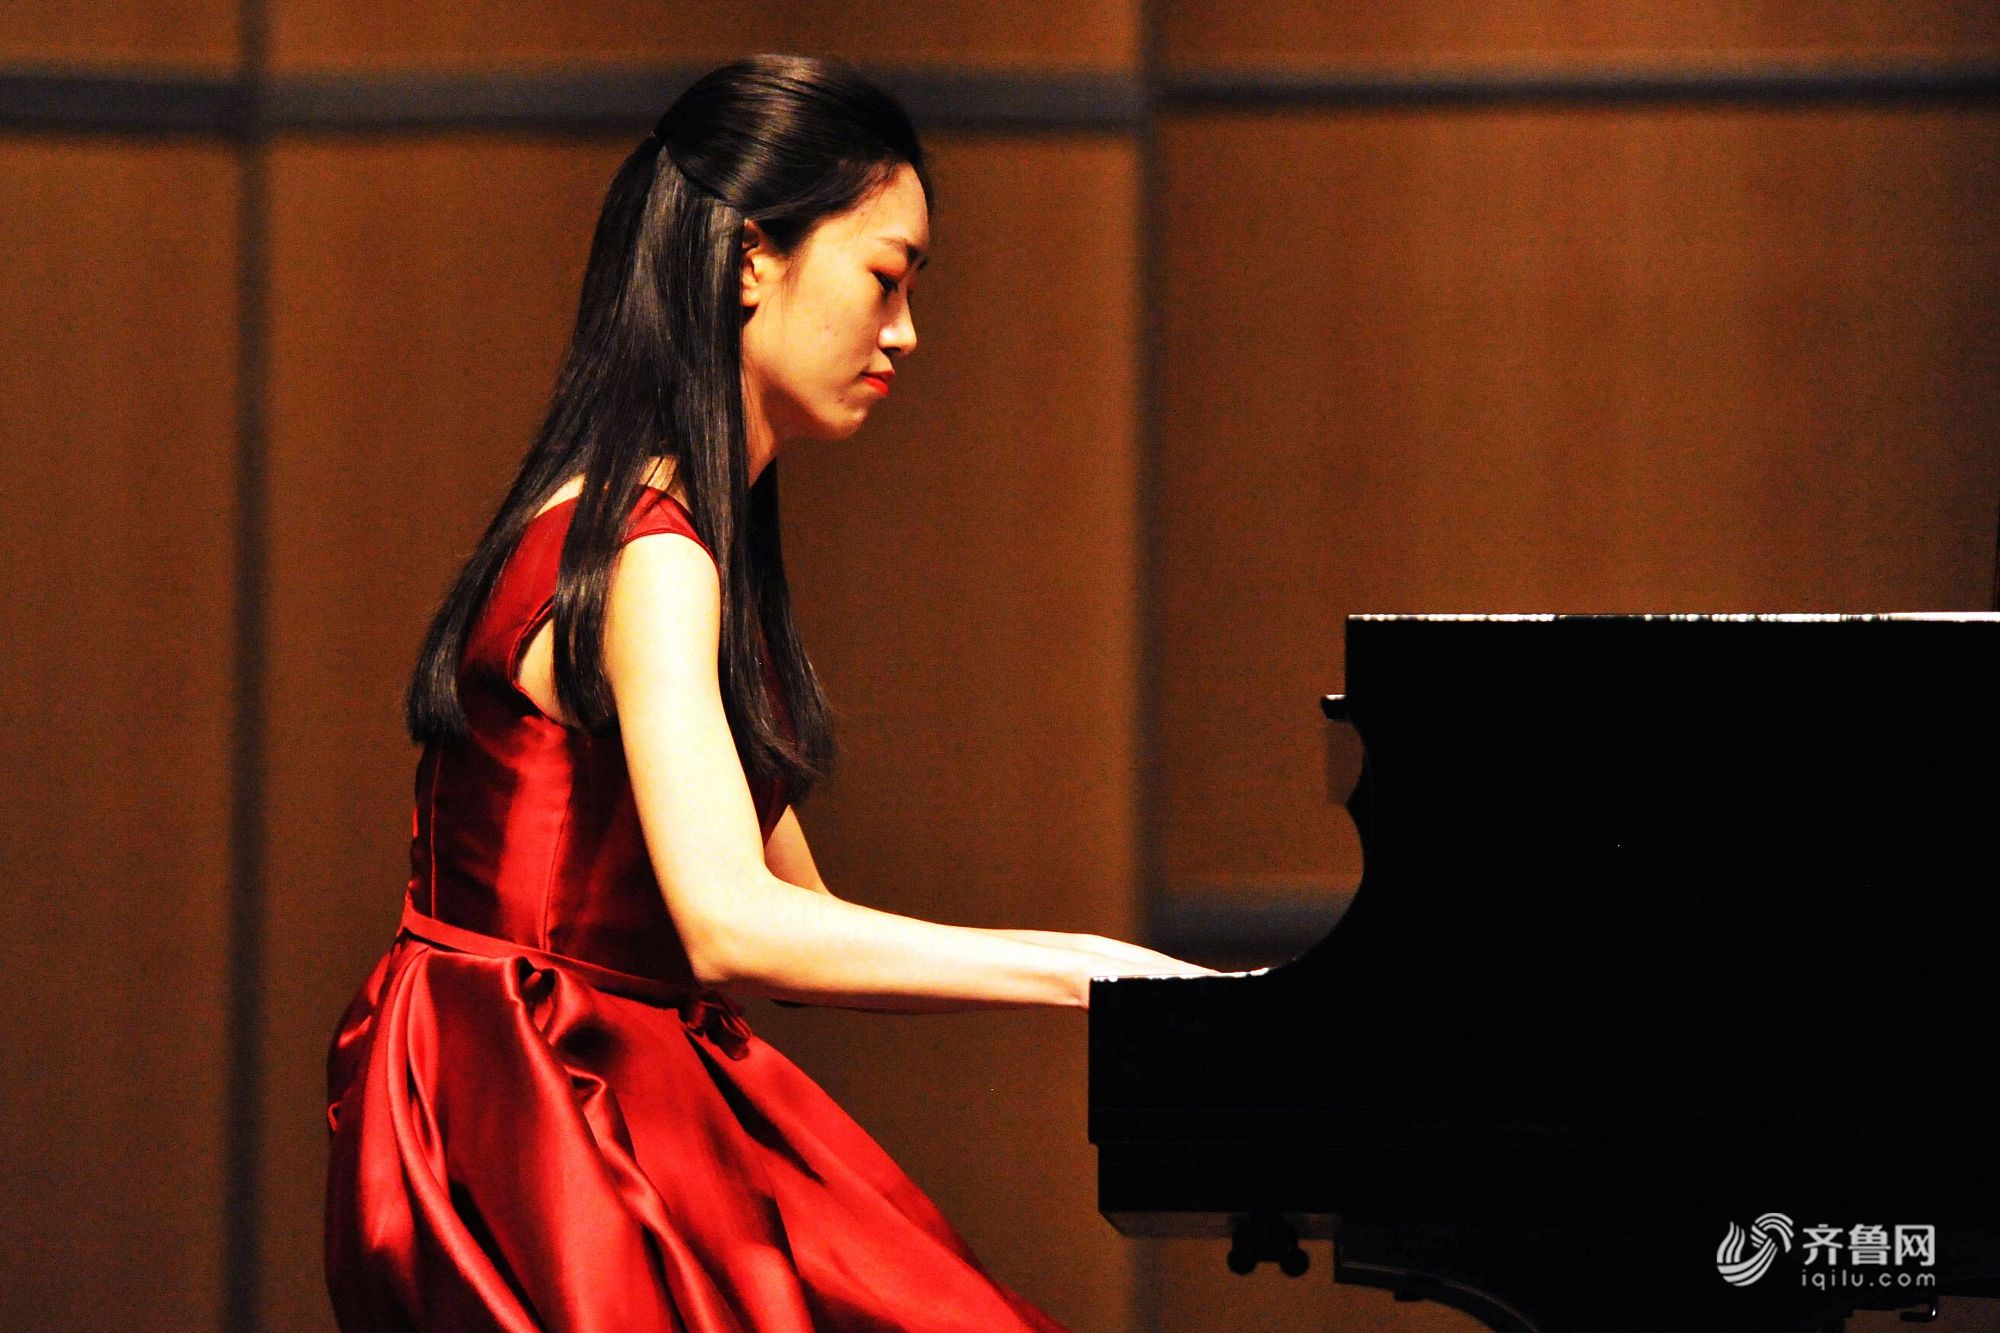 青岛高校大学生钢琴巡演举行 高雅音乐引发共鸣